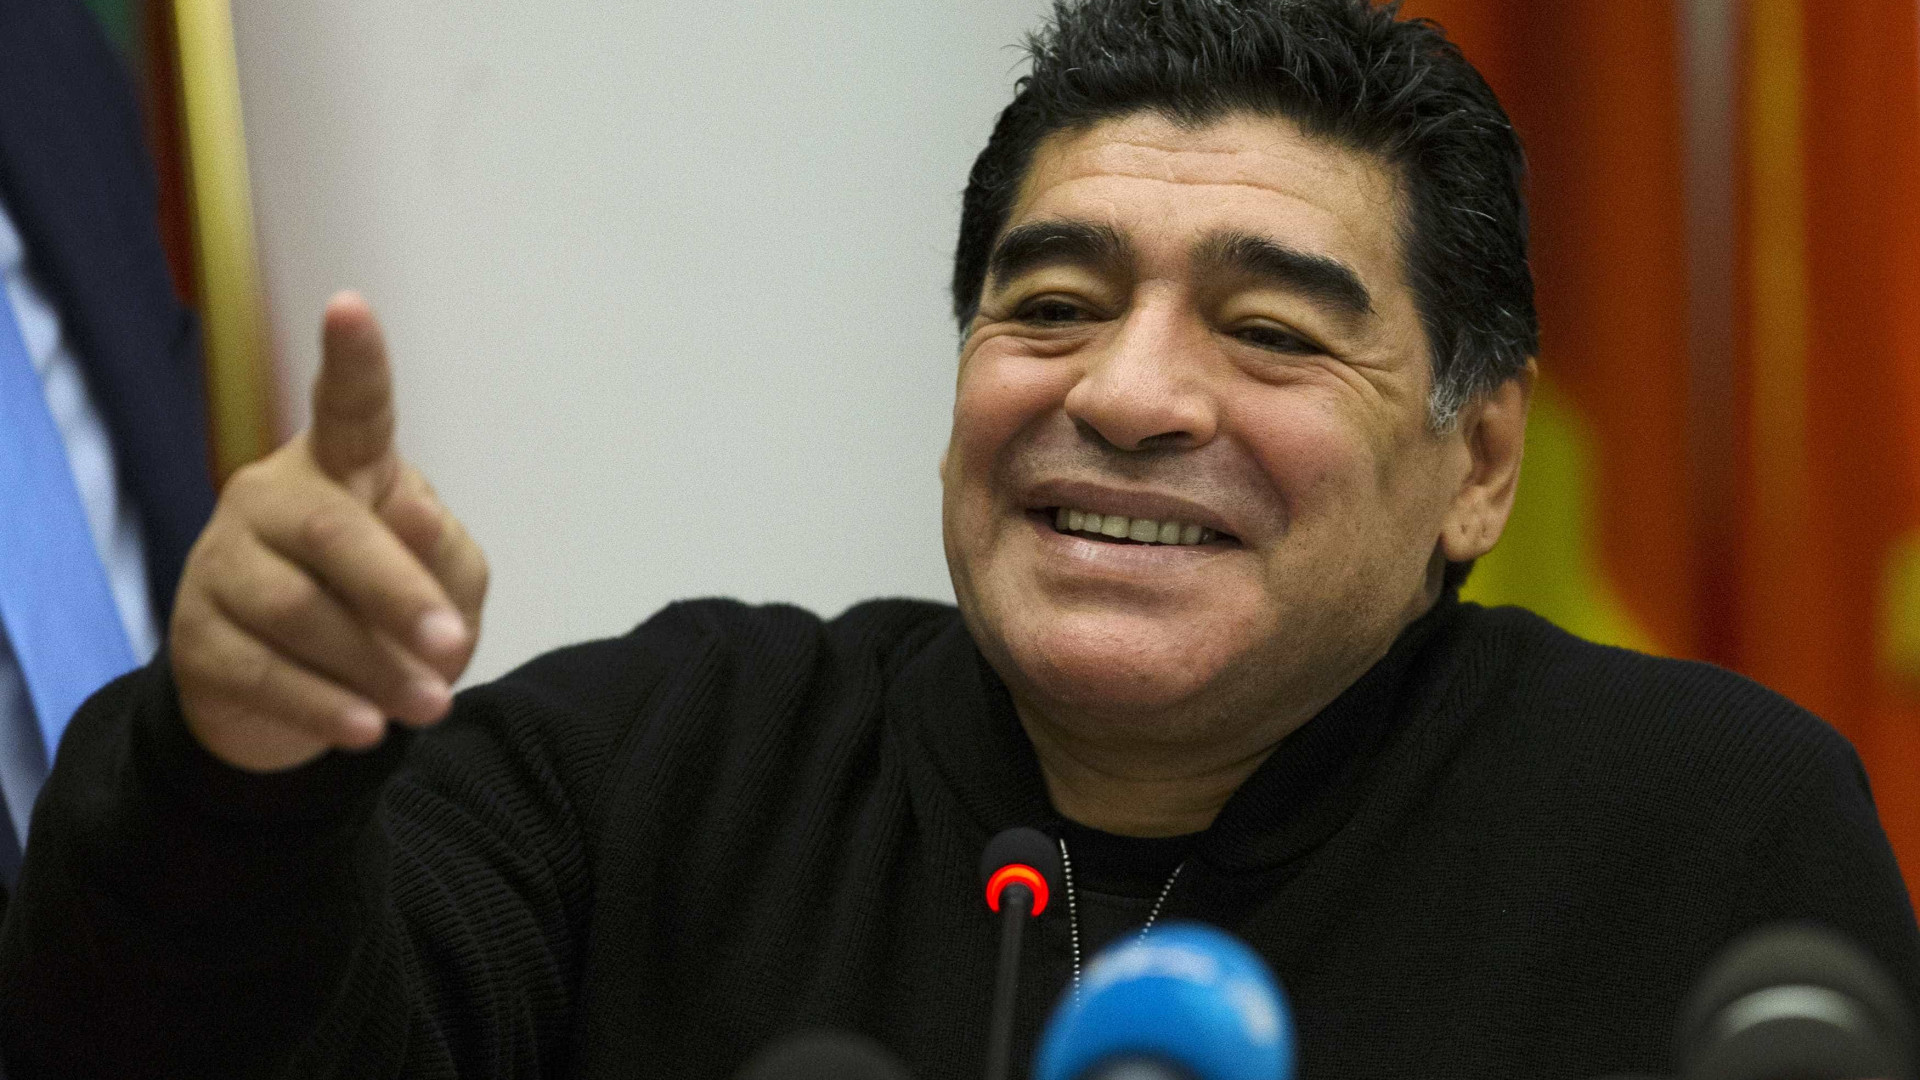 Aposentado desde 1998, Maradona pode voltar a jogar